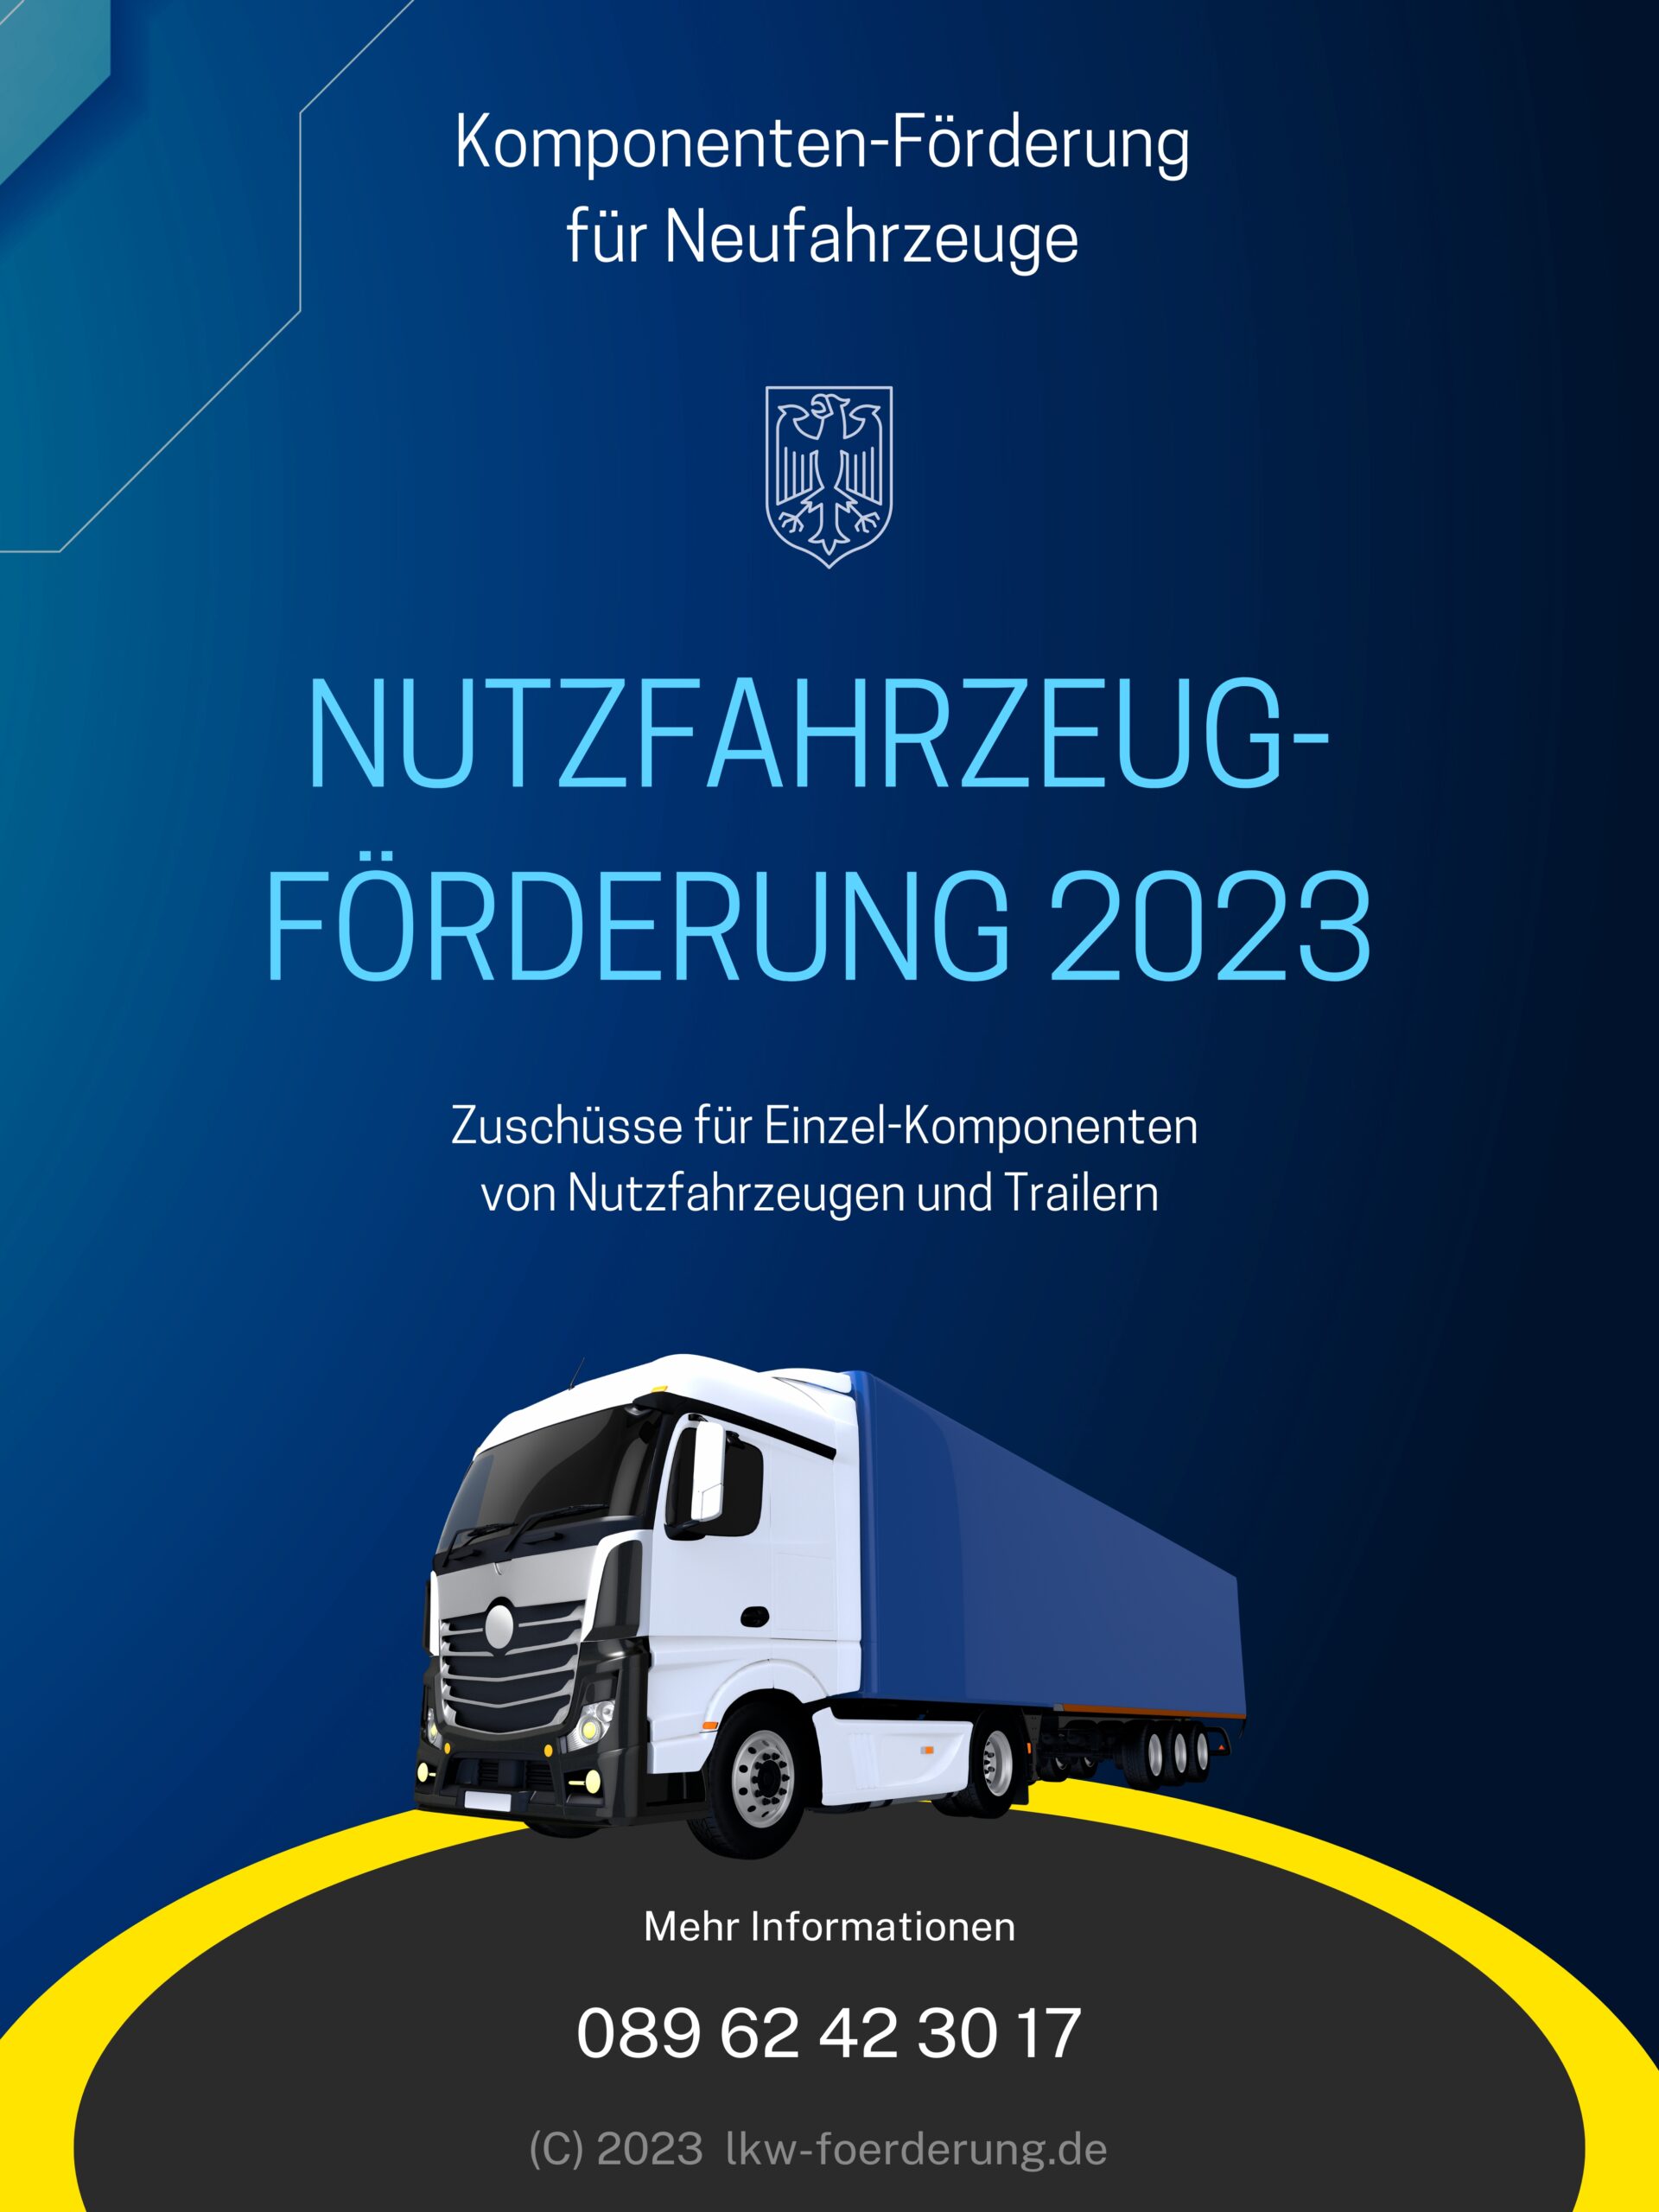 das-bild-zeigt-das-Komponenten-foerderprogramm-2023-fuer-neue-und-schwere-nutzfahrzeuge-und-trailer